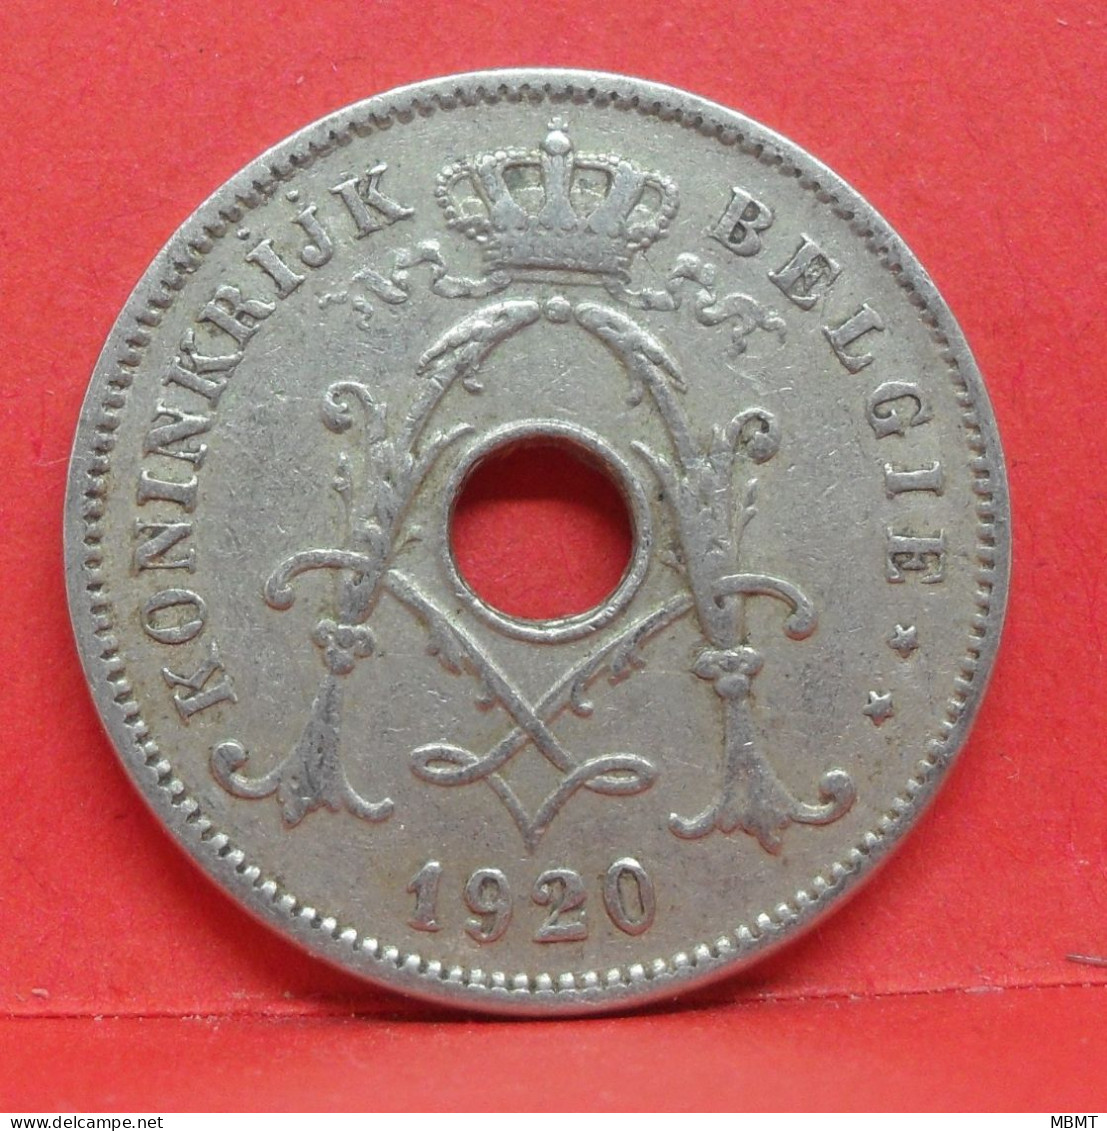 10 Centimes 1920 - TB - Pièce Monnaie Belgie - Article N°1859 - 10 Centimes